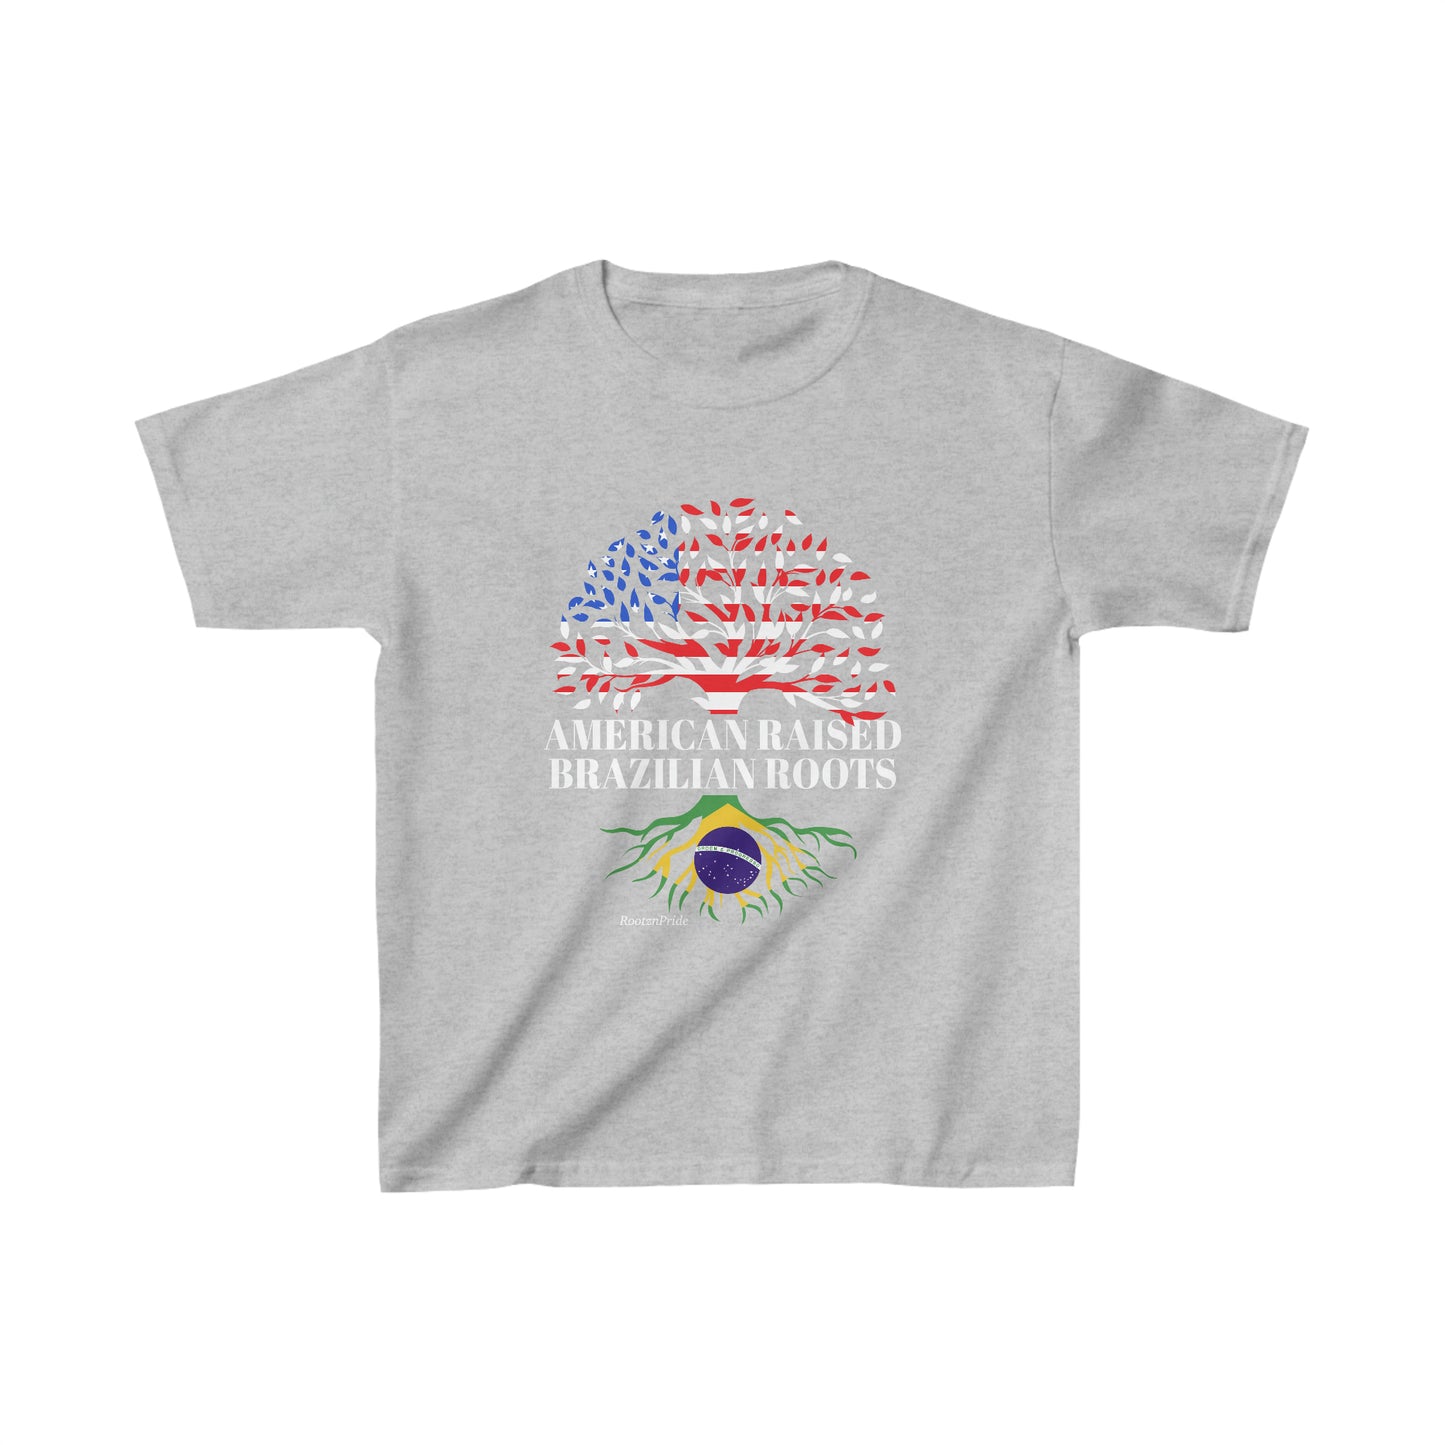 Brazilian Roots Design 2: Children T-Shirt